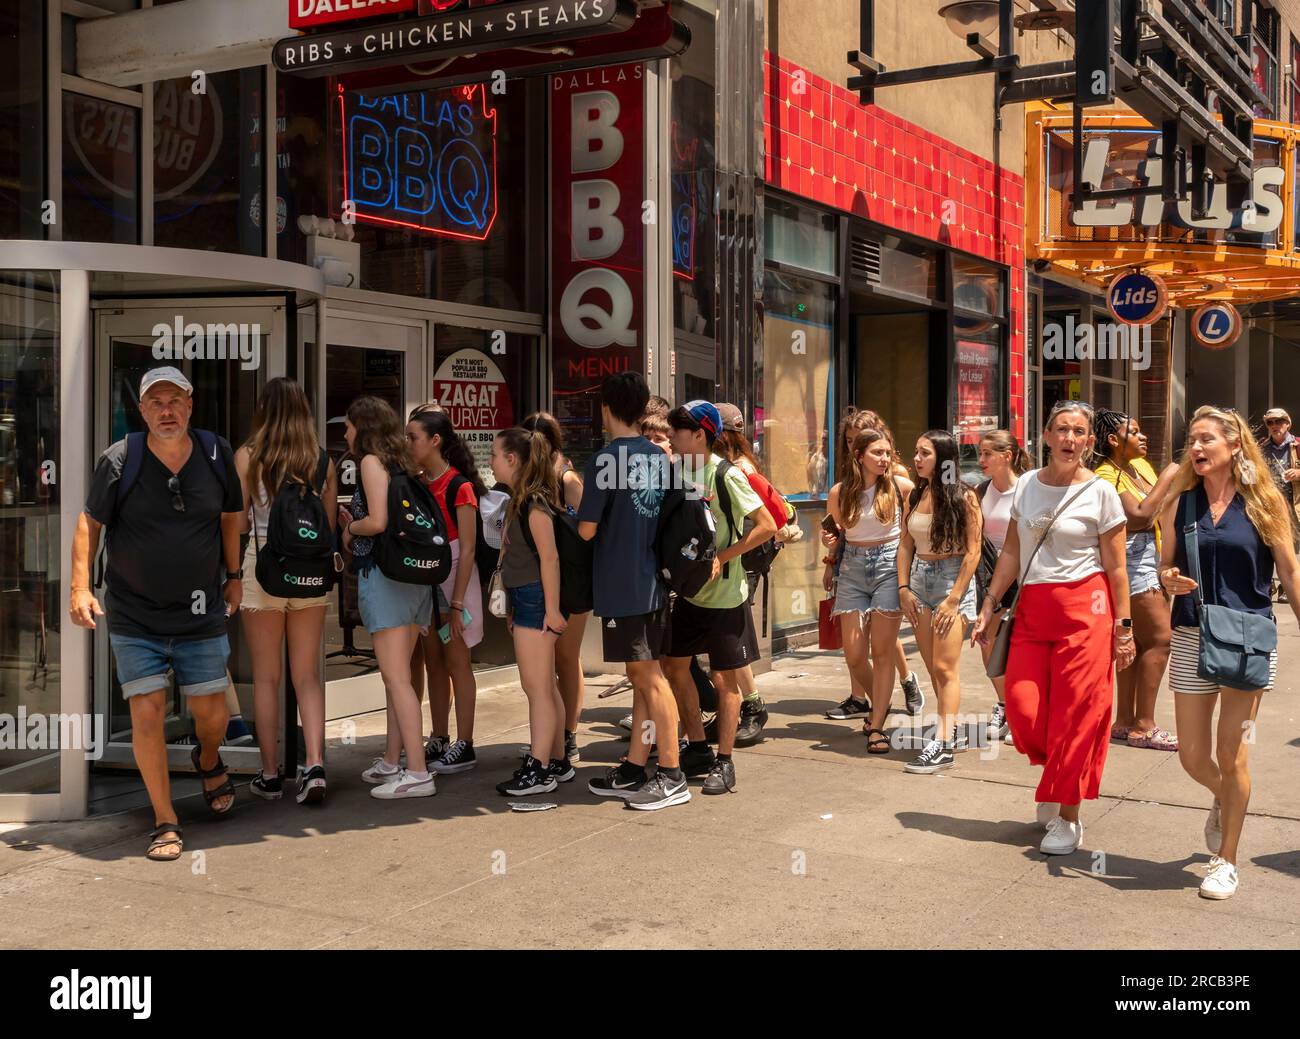 Die Gruppe steht am Samstag, den 8. Juli 2023, in Schlange, um das Dallas BBQ Restaurant am Times Square in New York zu betreten. © Richard B. Levine) Stockfoto